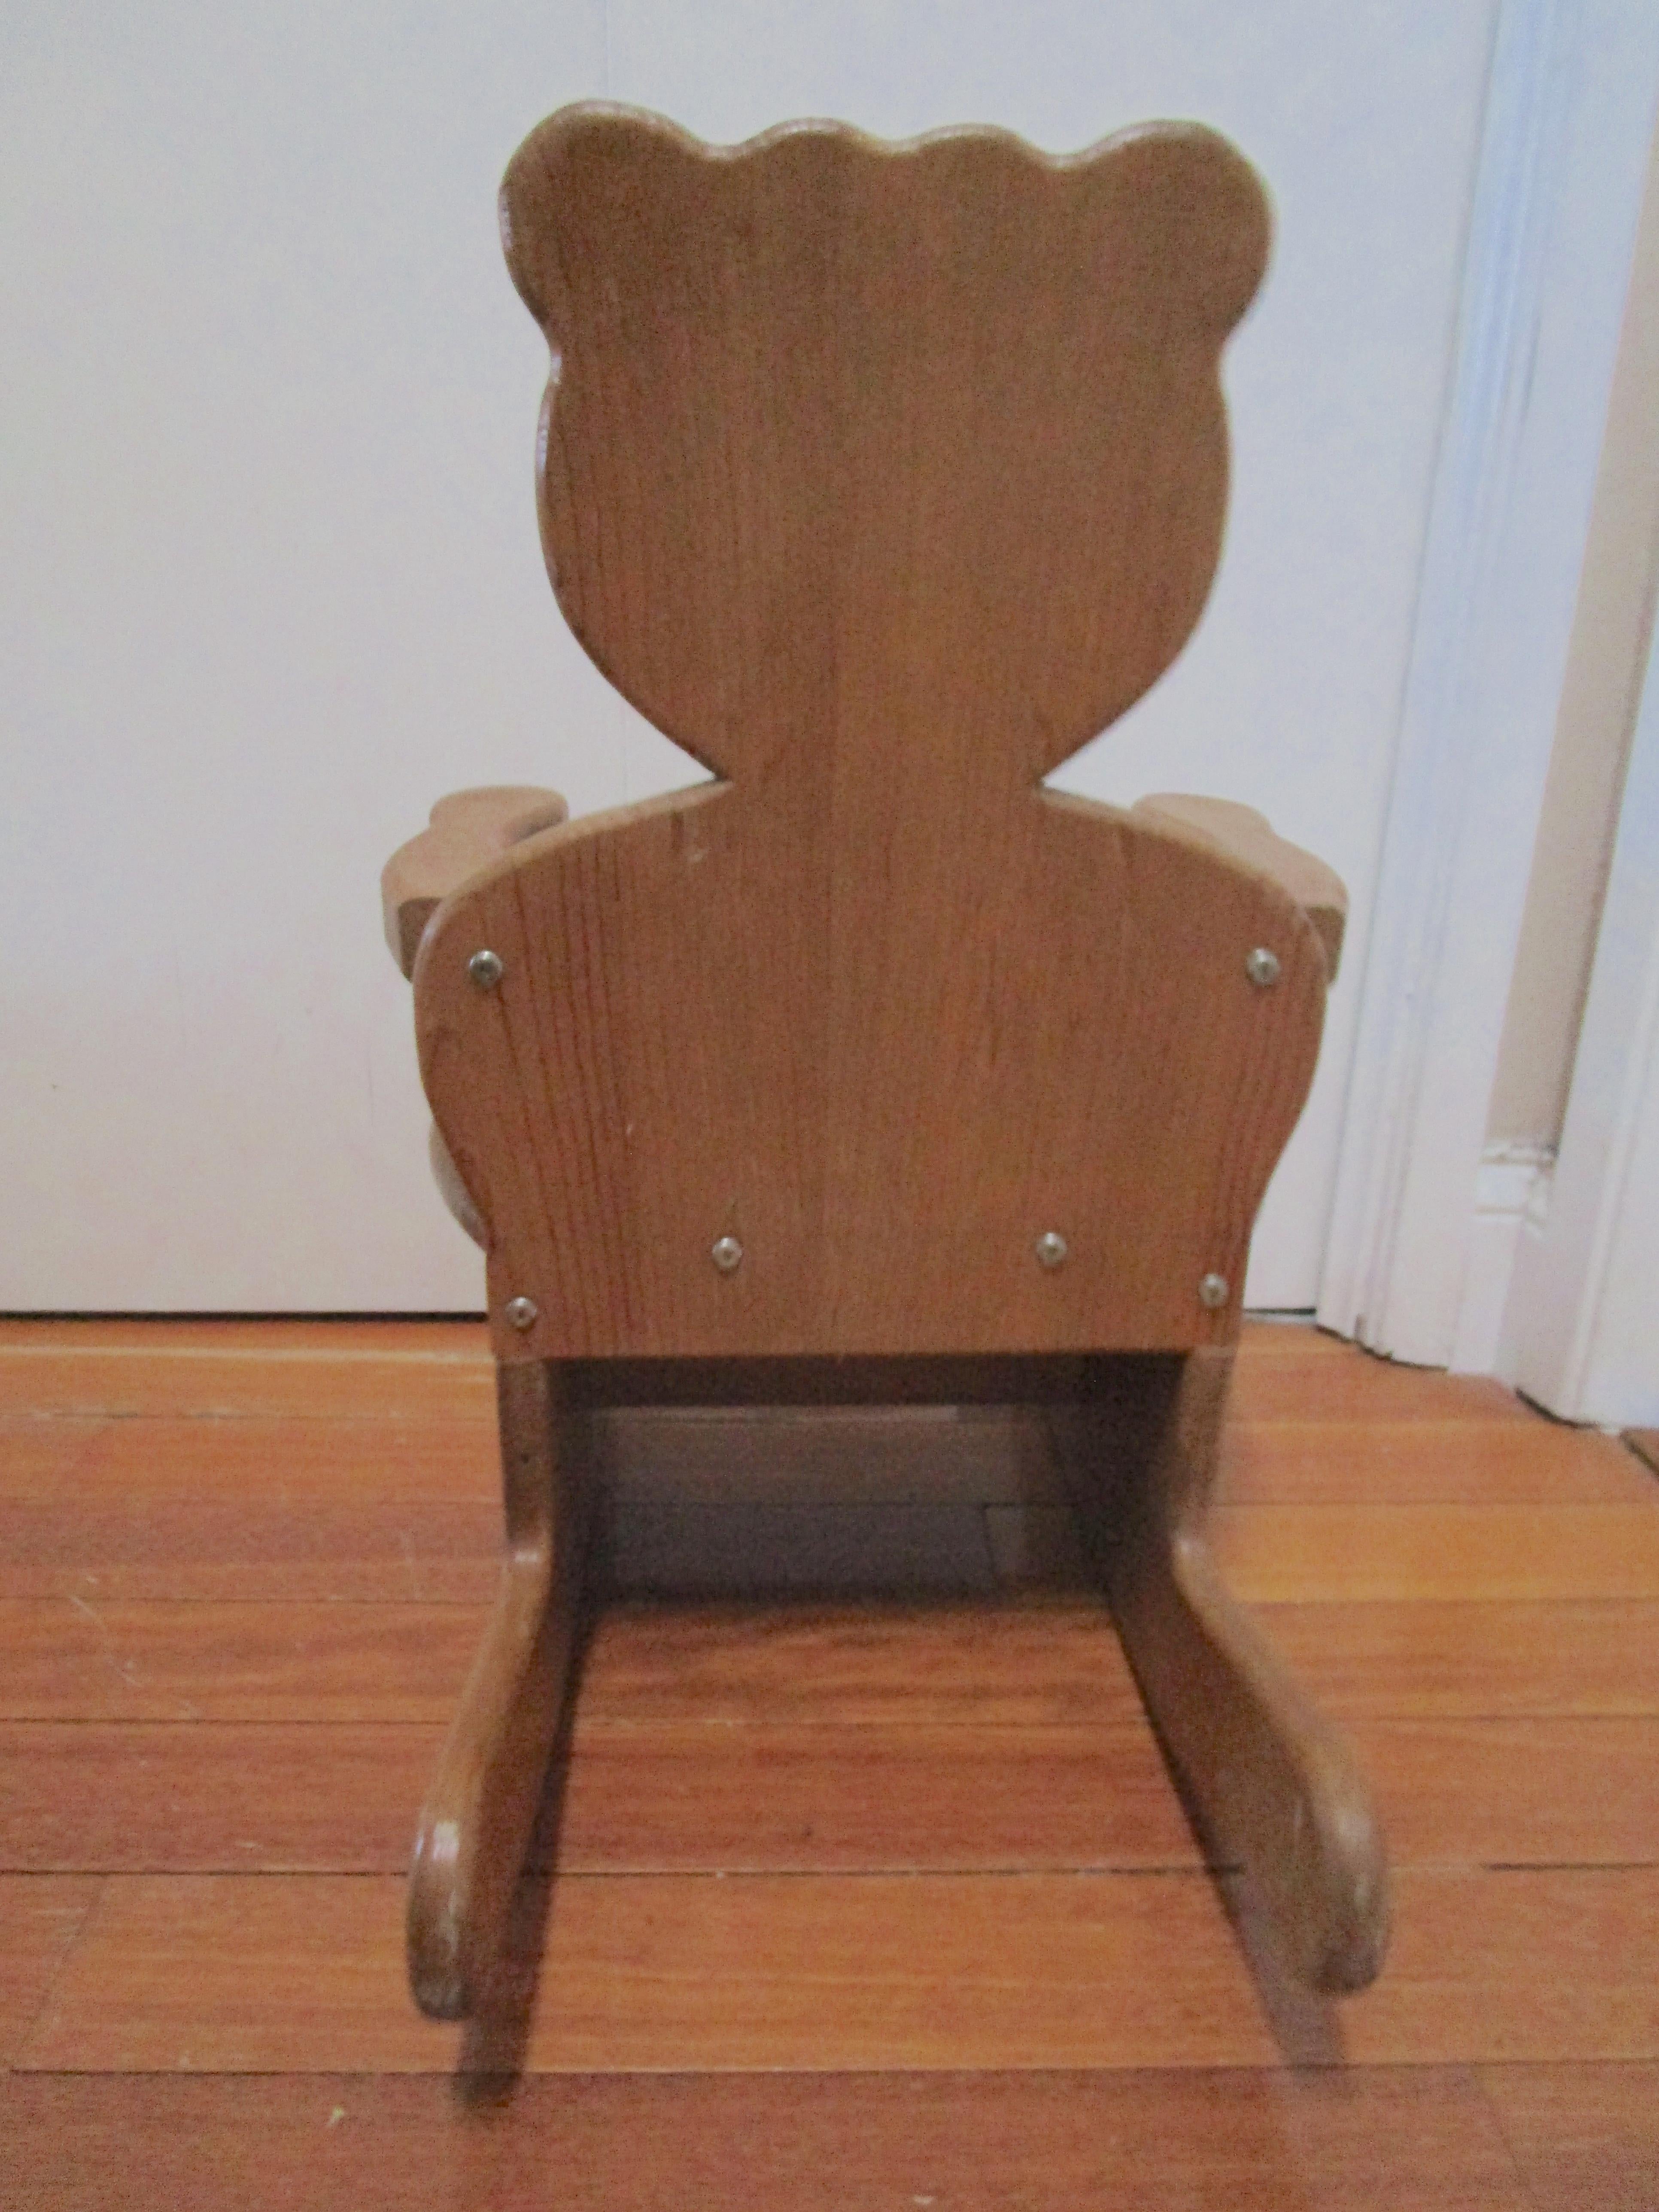 Ce charmant rocking-chair ourson en bois dur massif est parfait pour l'espace personnel d'une petite personne. La chaise a développé une belle patine et elle est solide et bien construite. Il est sculpté à la main, fait à la main et en bon état avec